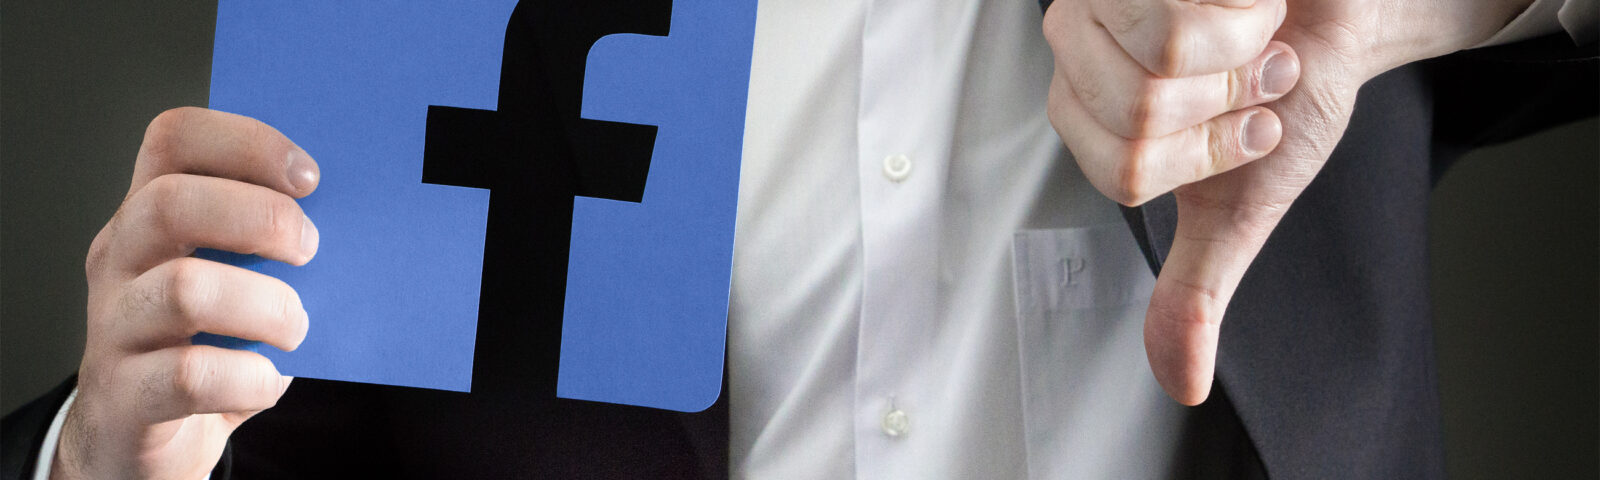 ¿Compartiste o diste “Me gusta” en Facebook? La demanda judicial contra usted está en camino